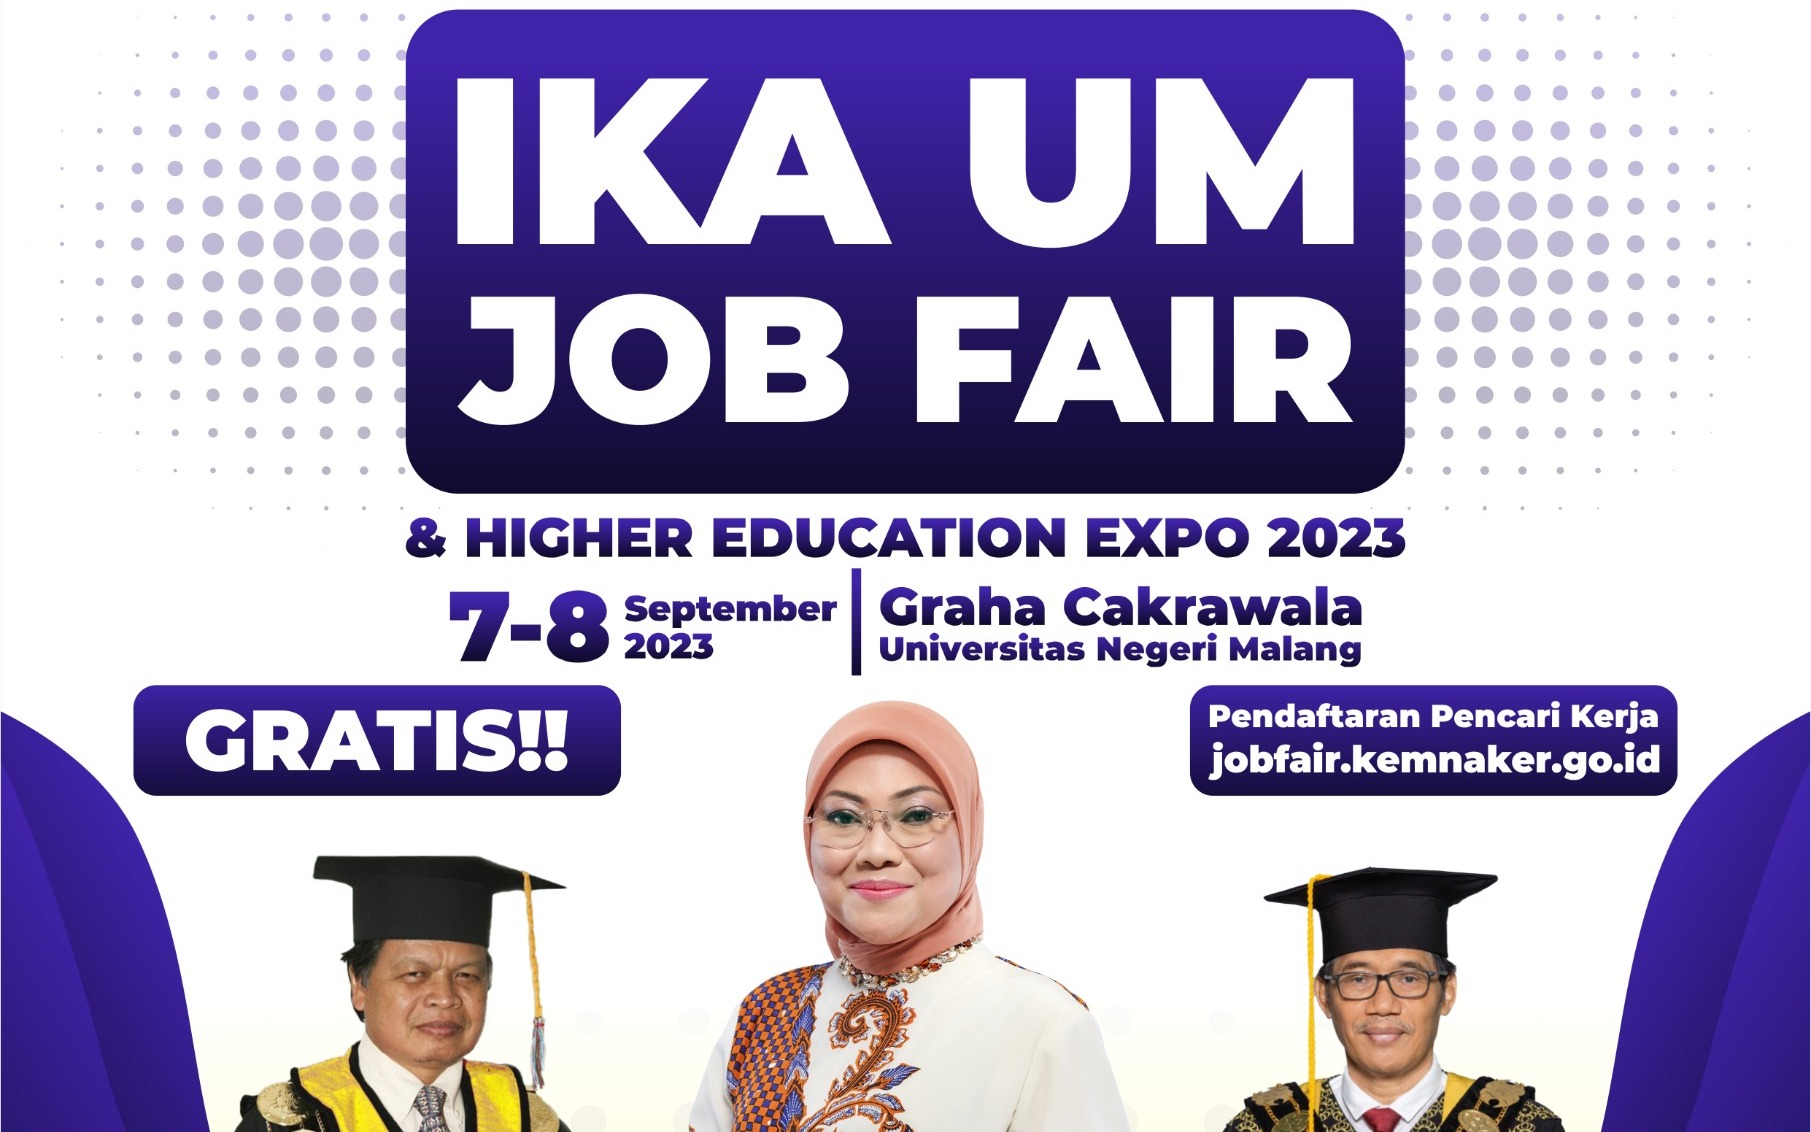 IKA UM JOB FAIR & HIGHER EDUCATION EXPO 2023